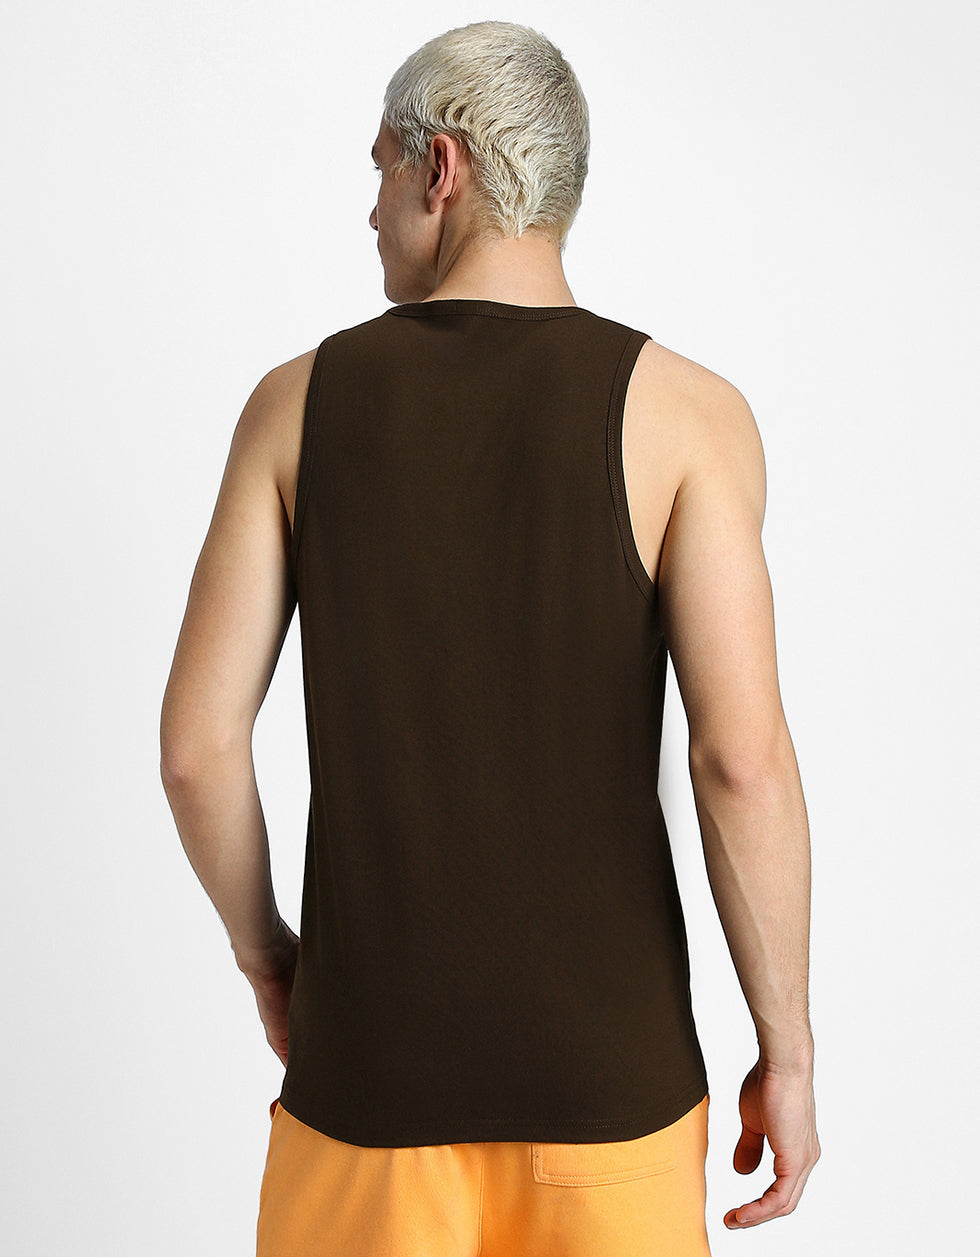 Go Veirdo Brown Printed Gym Vest